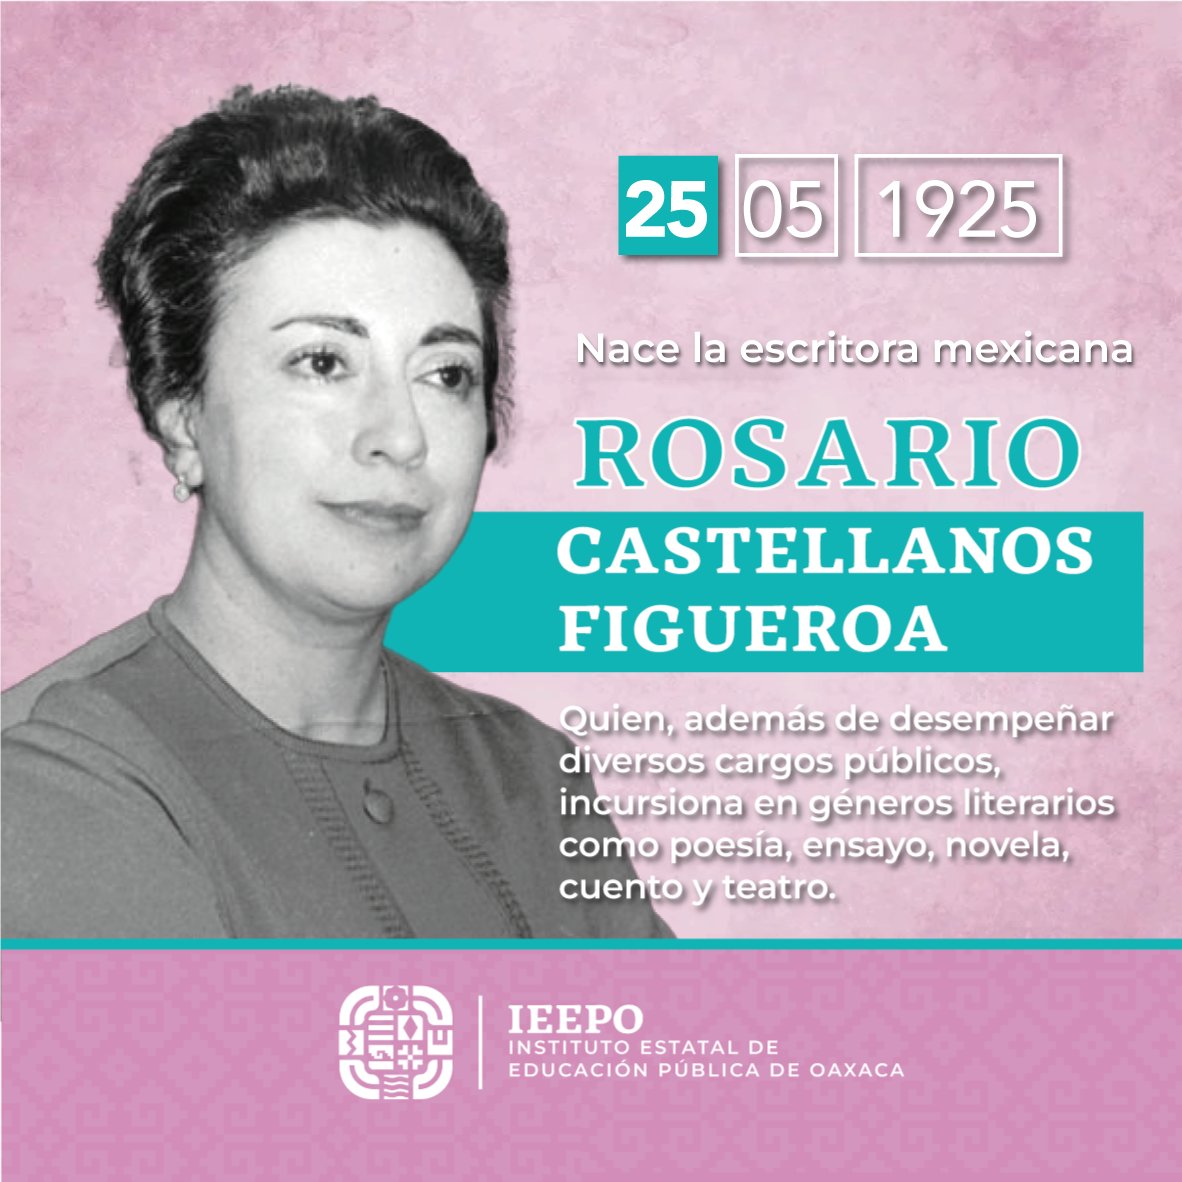 #UnDíaComoHoy pero de 1925, nace la escritora mexicana Rosario Castellanos Figueroa quien además de desempeñar diversos cargos públicos, incursiona en géneros literarios como poesía, ensayo, novela, cuento y teatro.